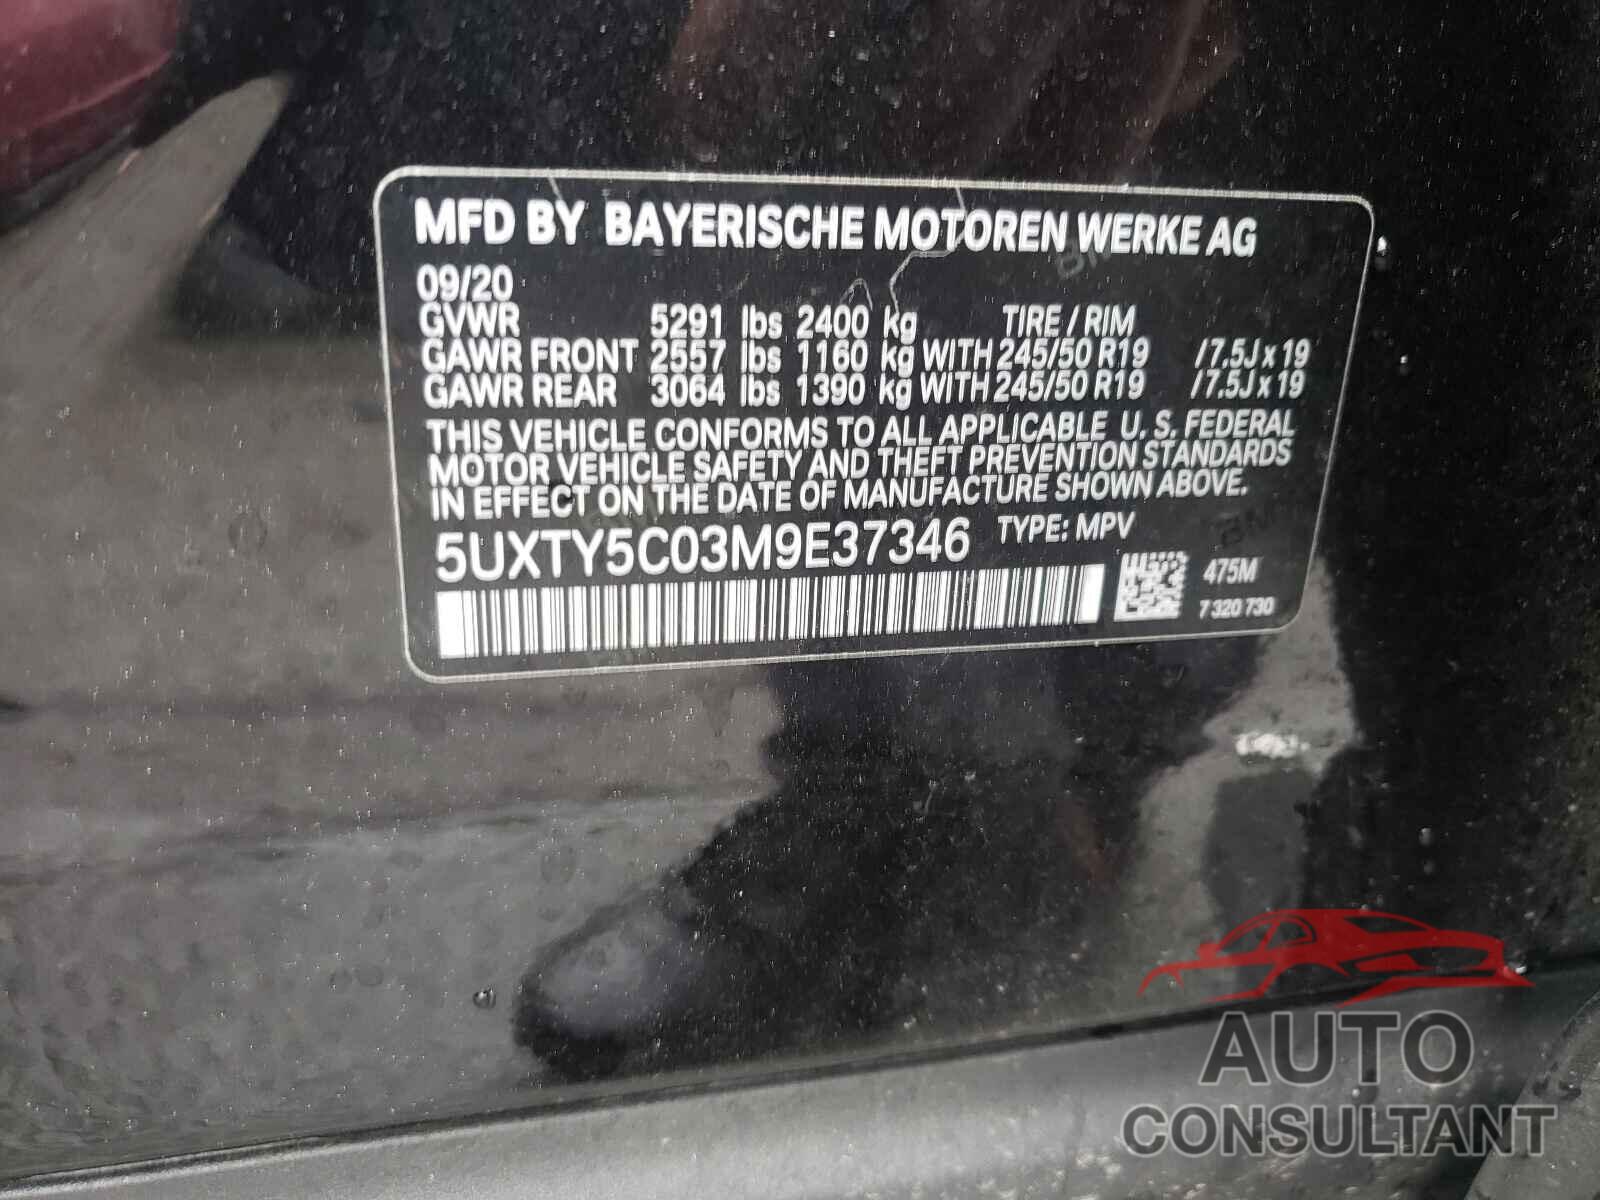 BMW X3 2021 - 5UXTY5C03M9E37346